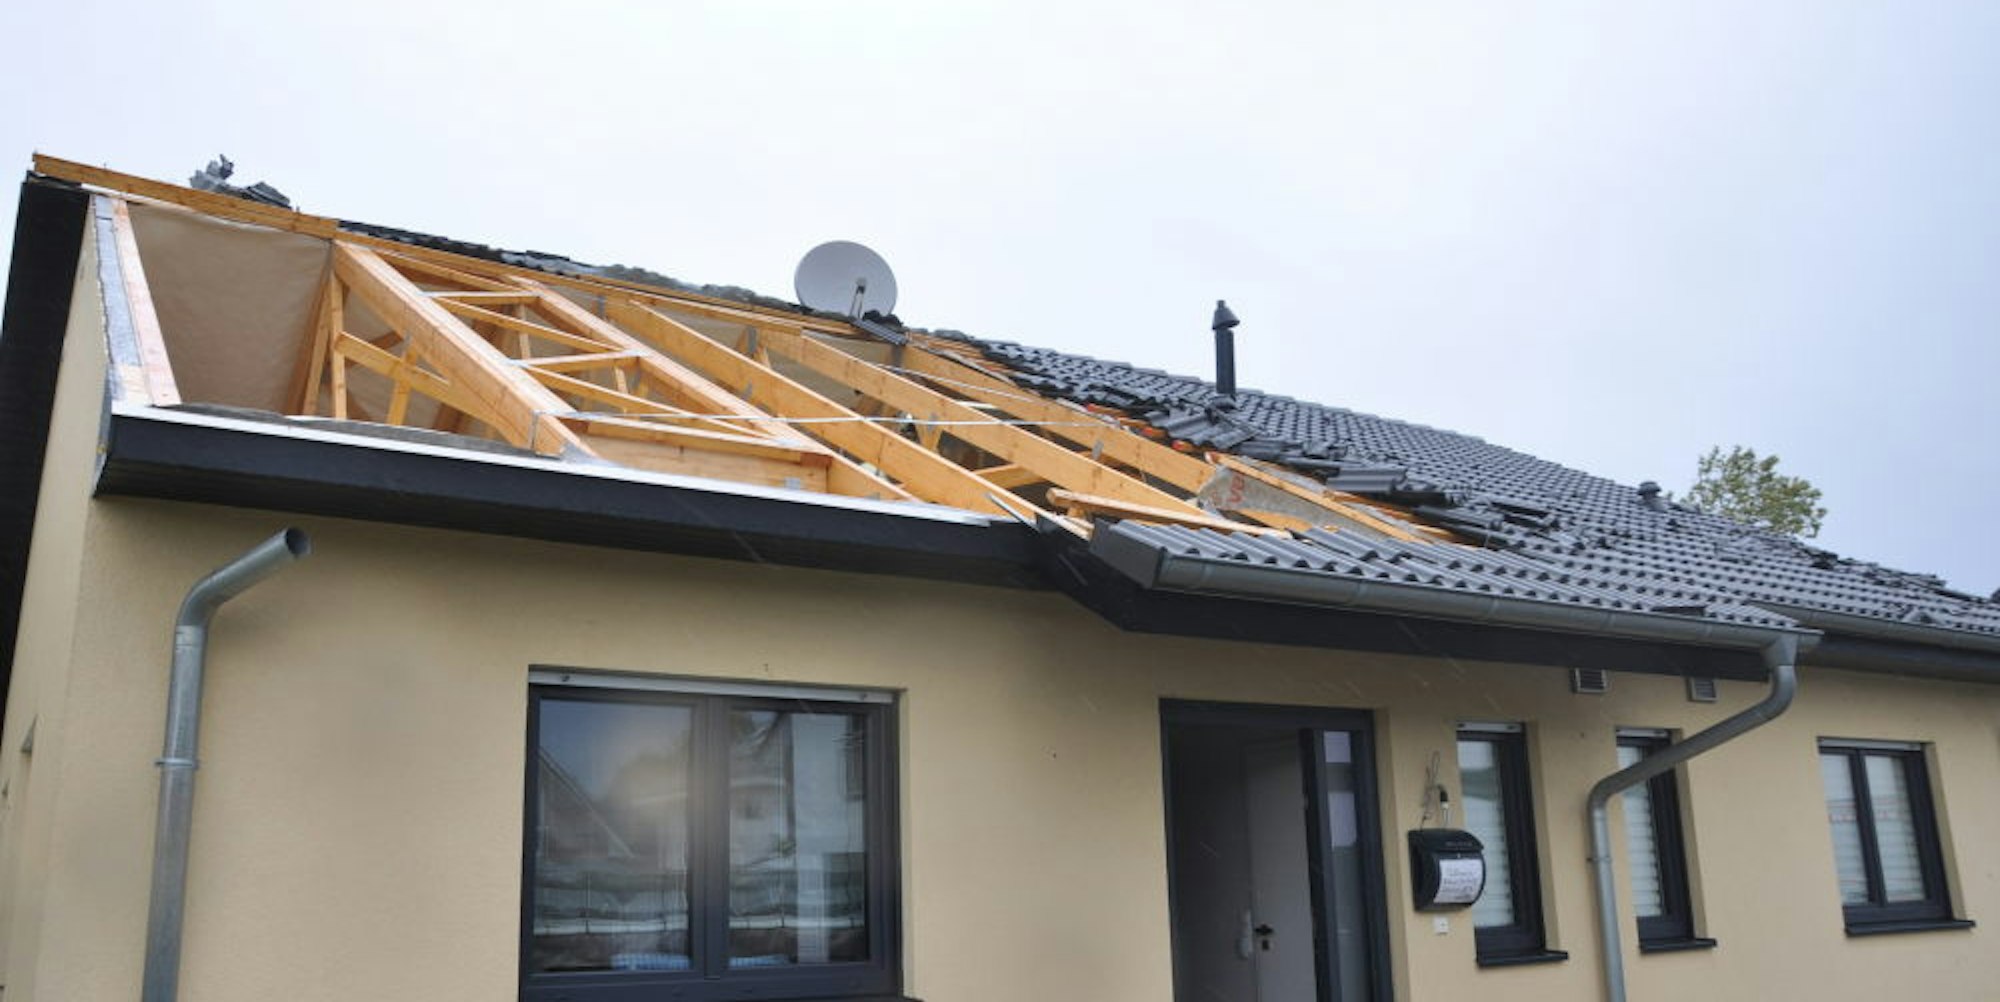 Teile des Hausdaches wurden vom Sturm abgedeckt.